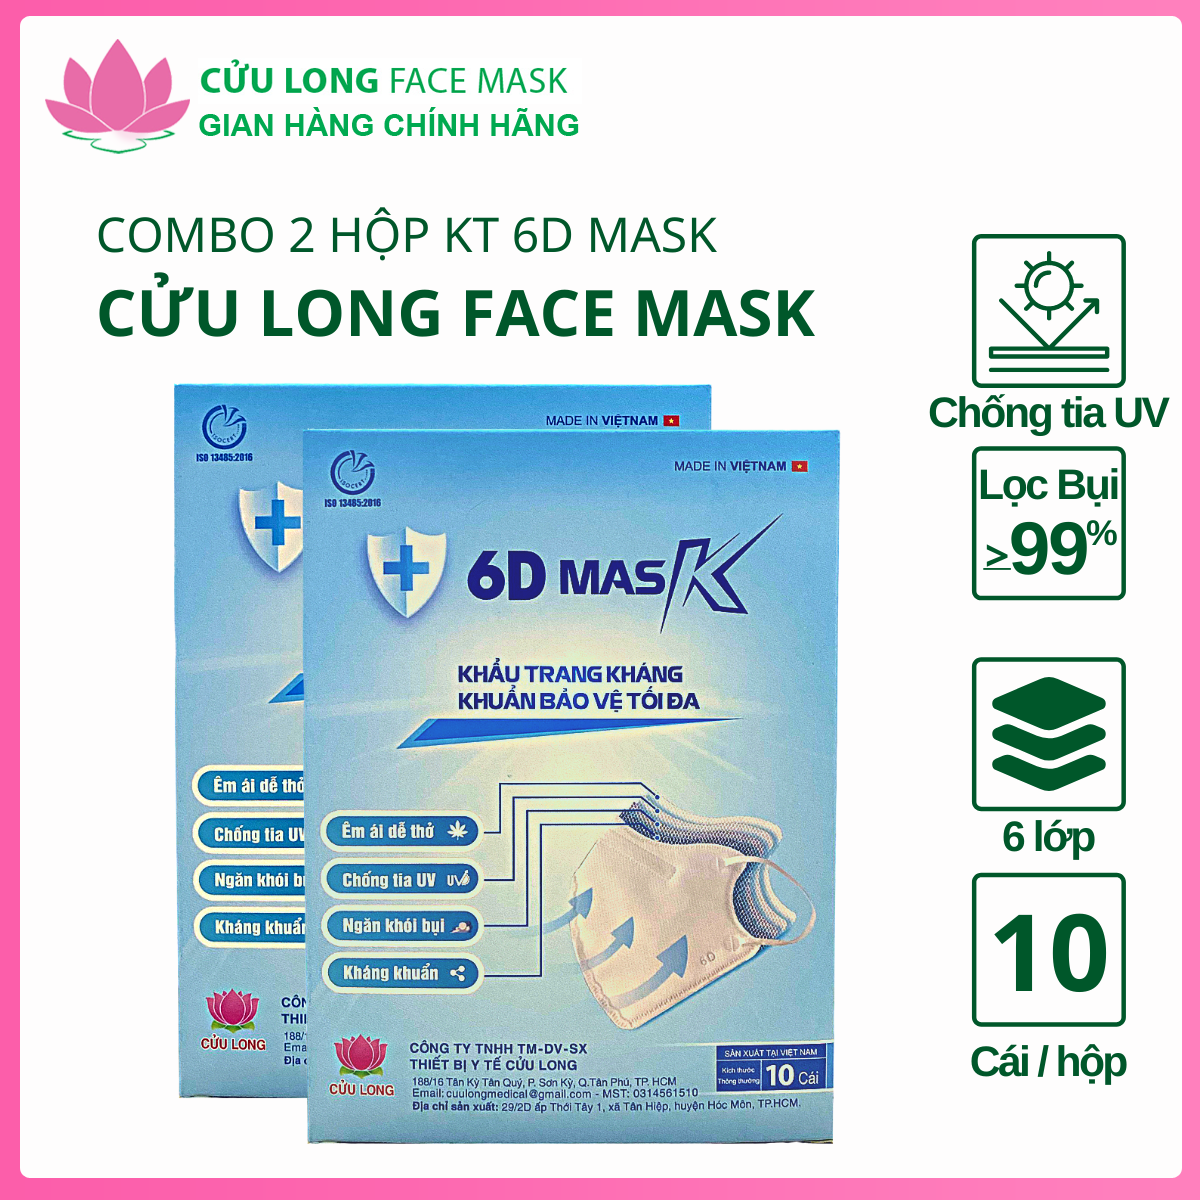 Combo 2 hộp khẩu trang y tế 6D Mask chính hãng Cửu Long Face Mask  Hộp 10